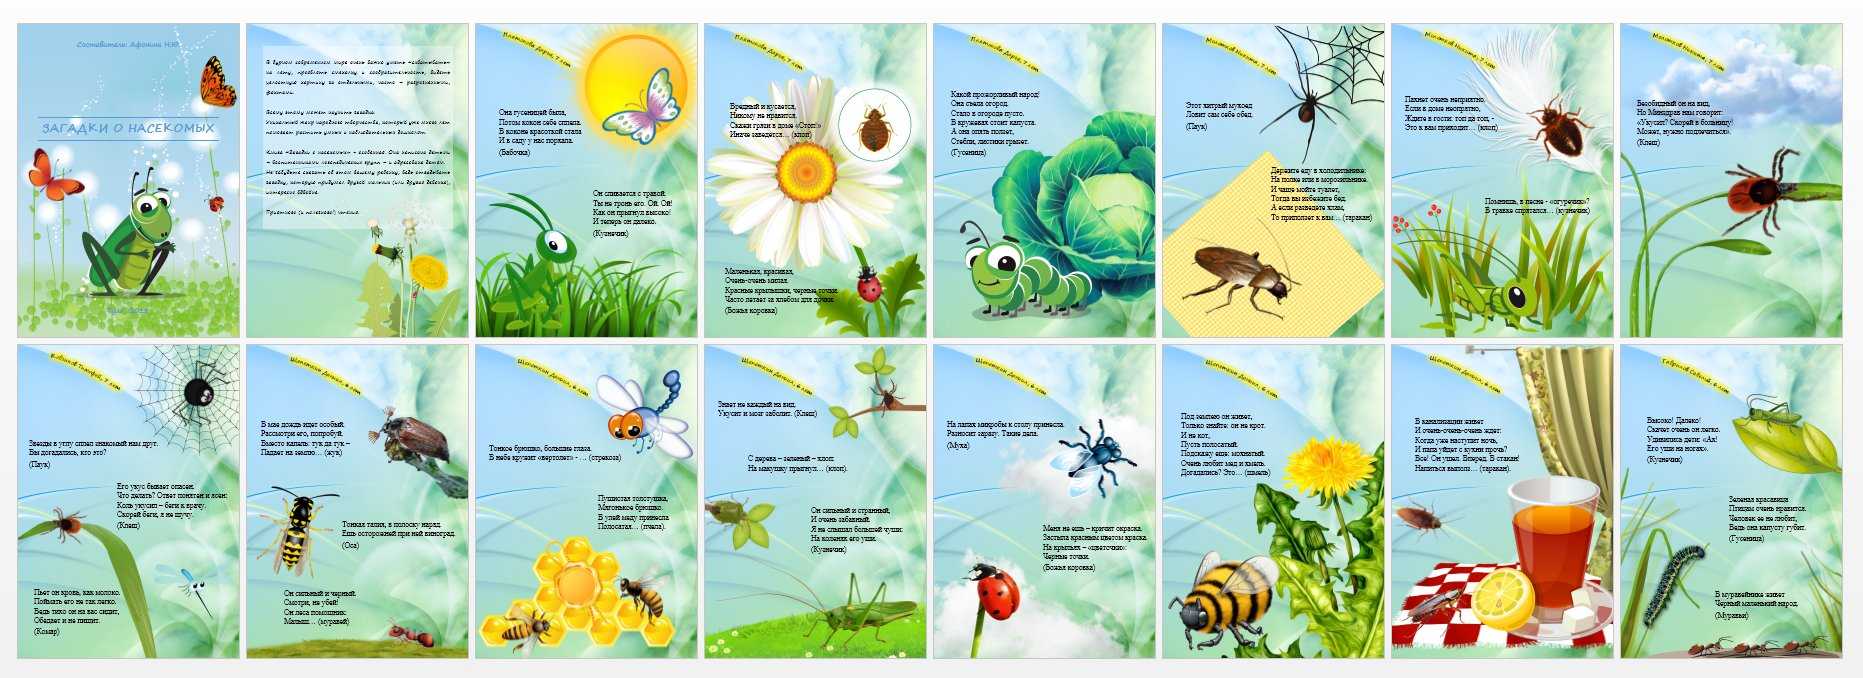 Про насекомых детям 3 лет. Загадки про насекомых для детей 6-7. Загадки про насекомых для детей. Загадки про насекомых для дошкольников. Загадки для детей про насекомых с ответами.